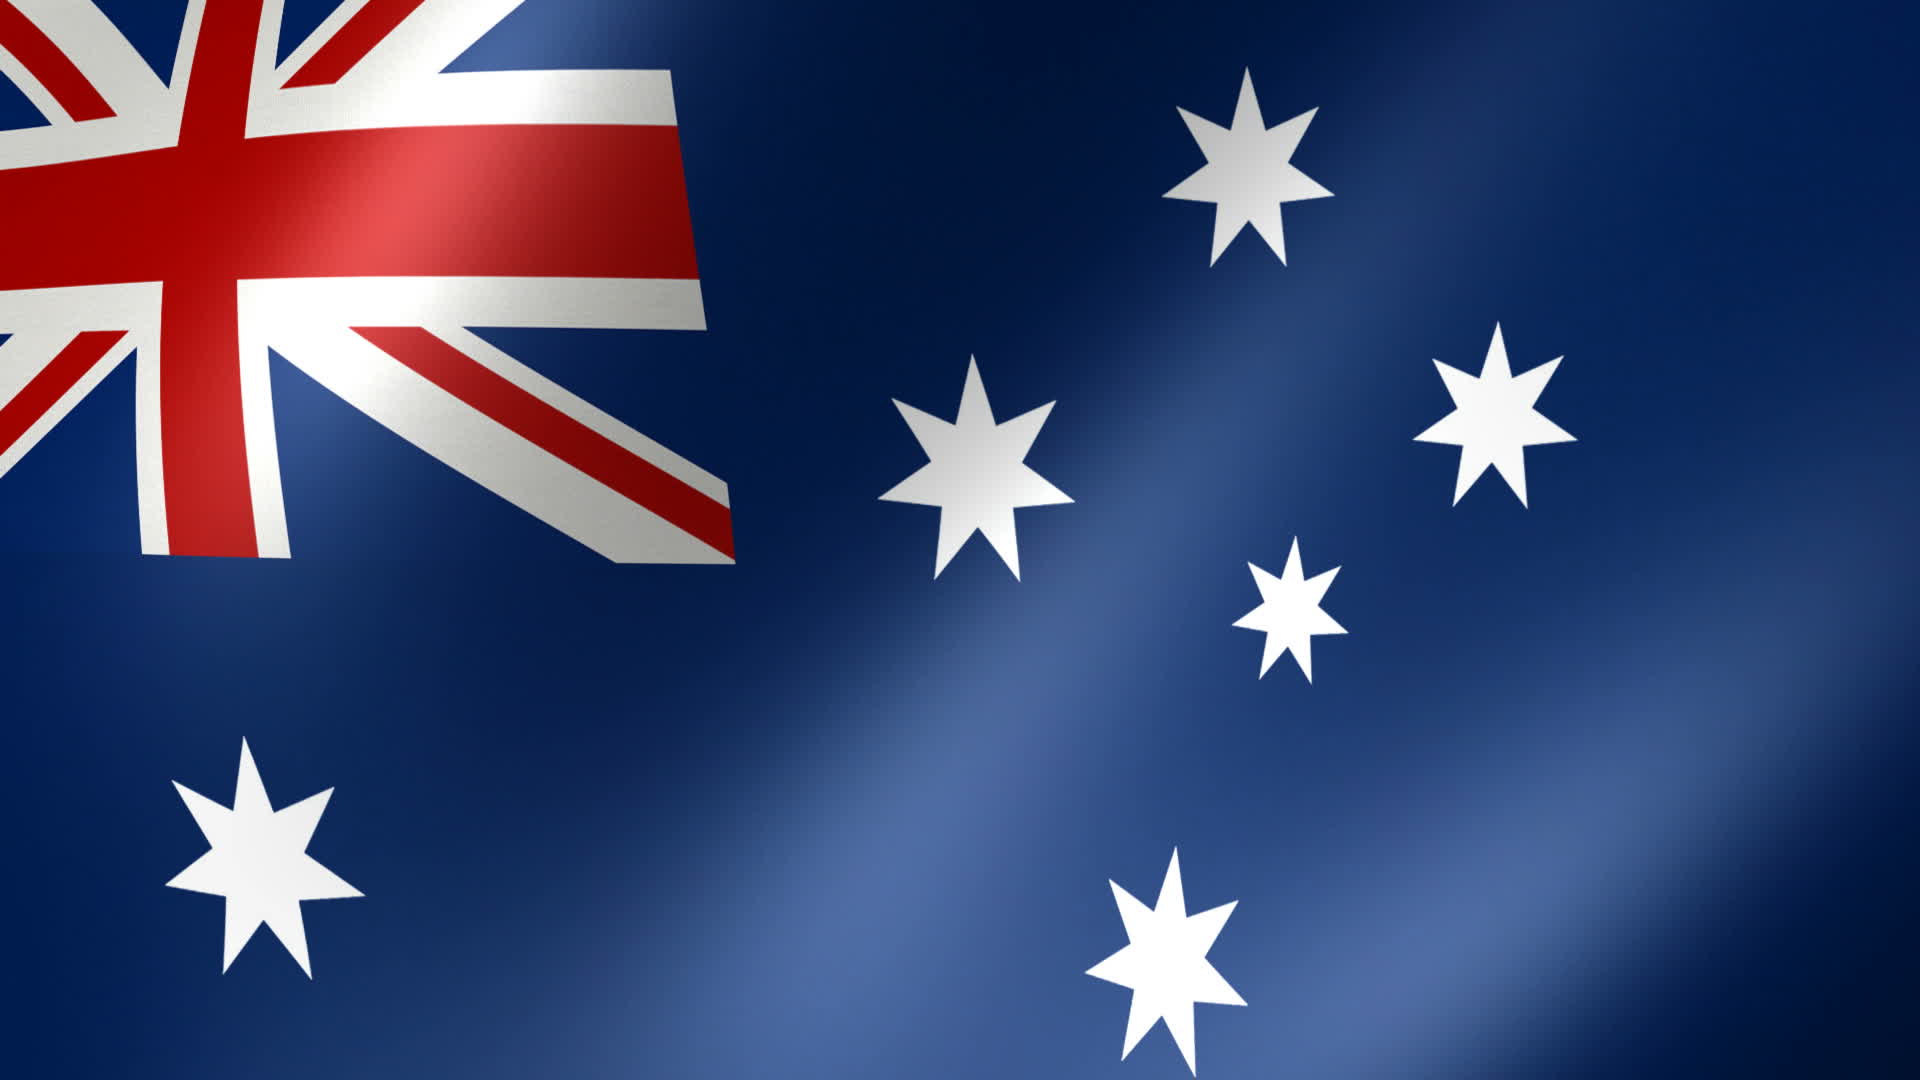 australia-flag-background-image-new-ide-wallpapers-for-desktop.jpg - Map